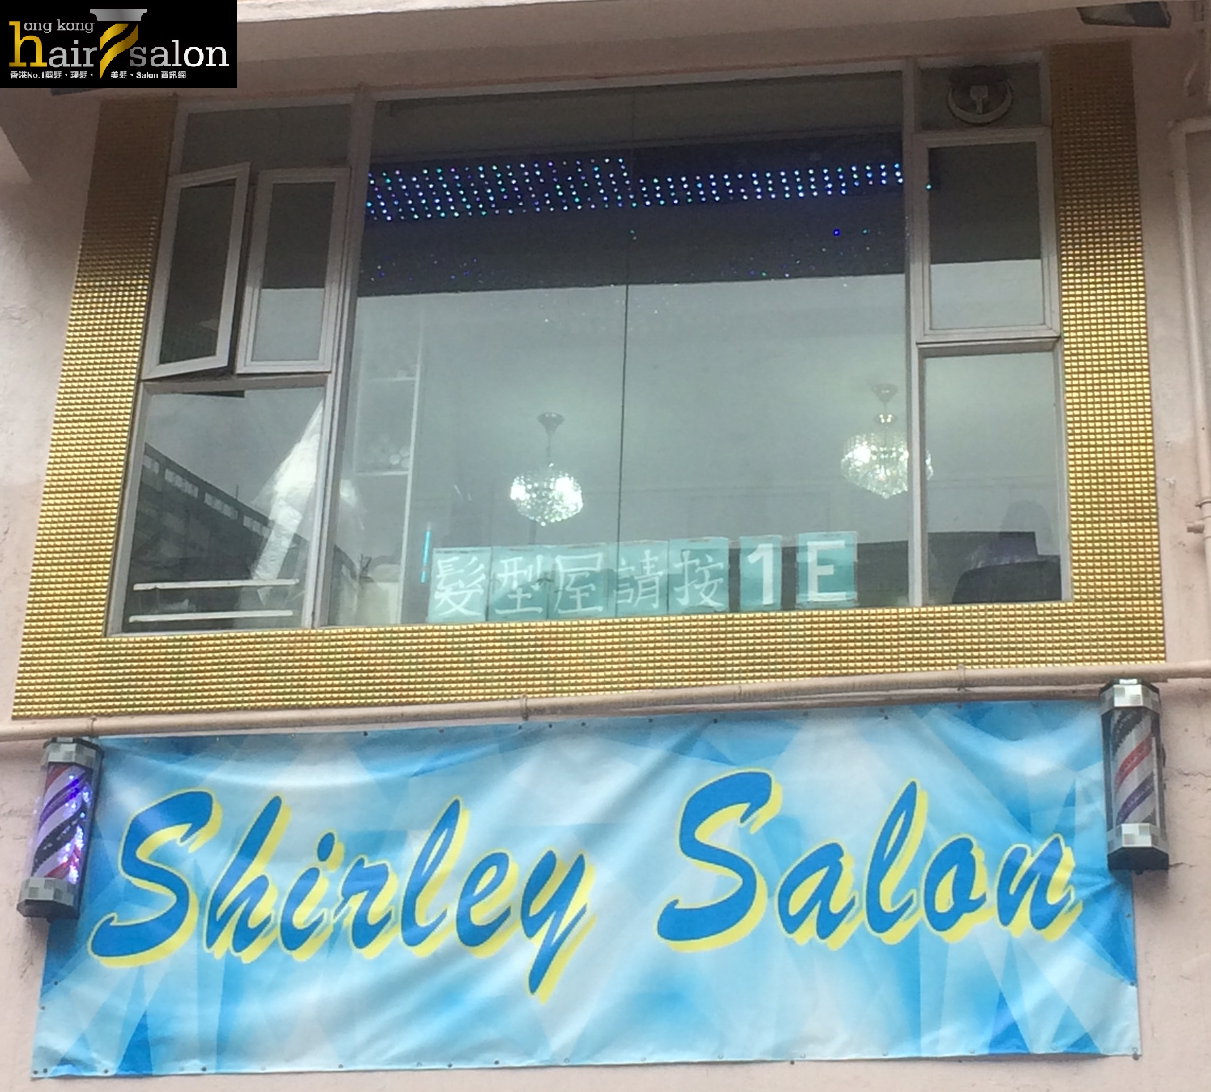 Haircut: Shirley Salon